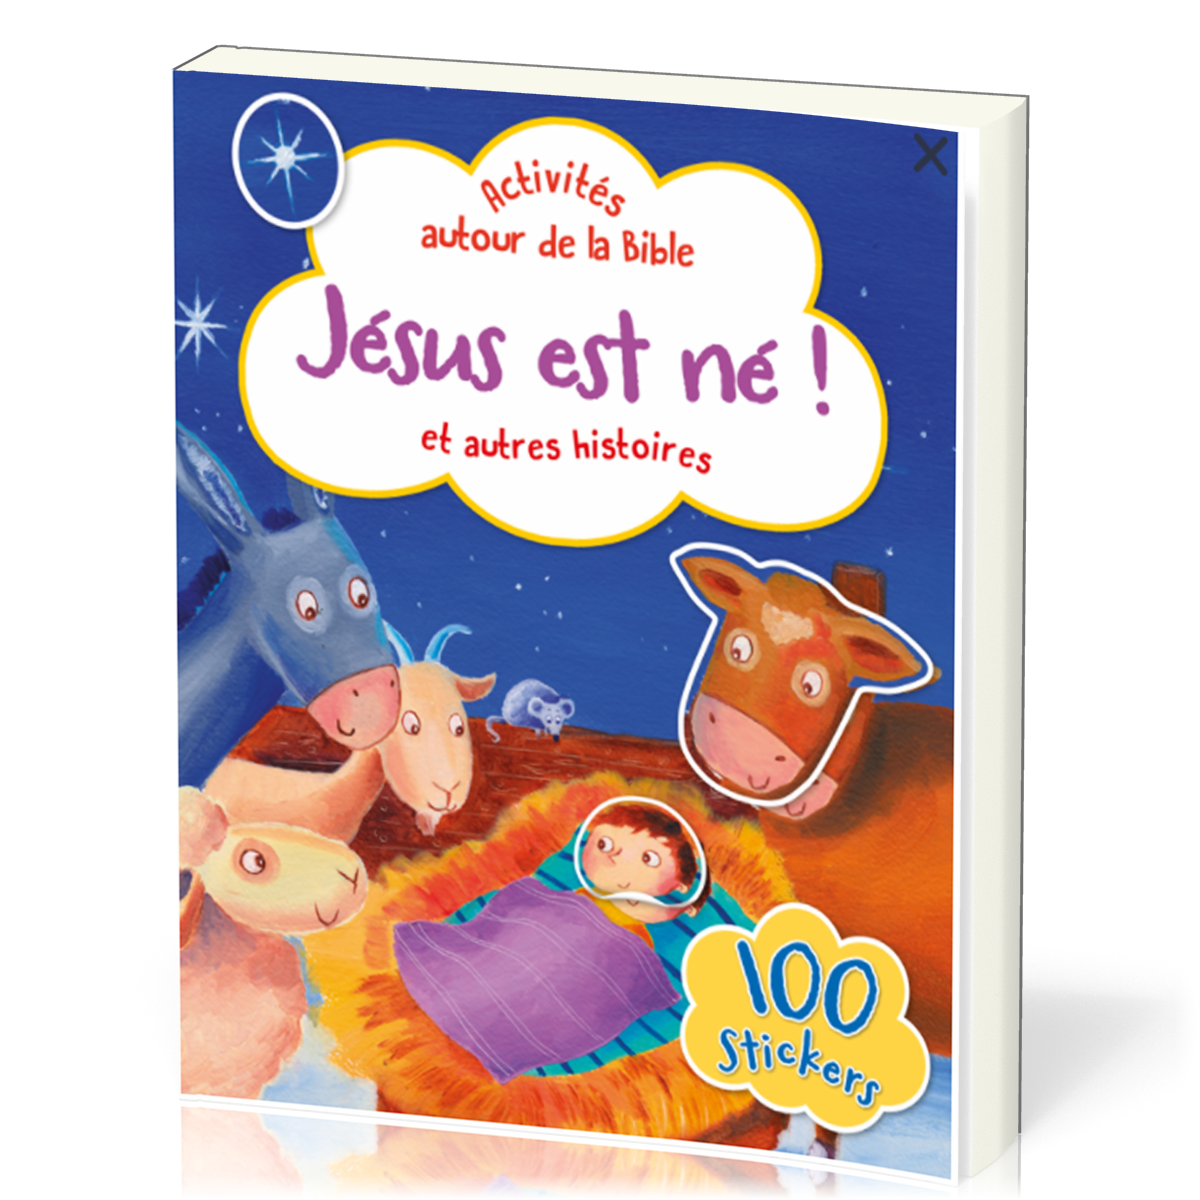 Jésus est né ! - Activités autour de la Bible avec 100 stickers